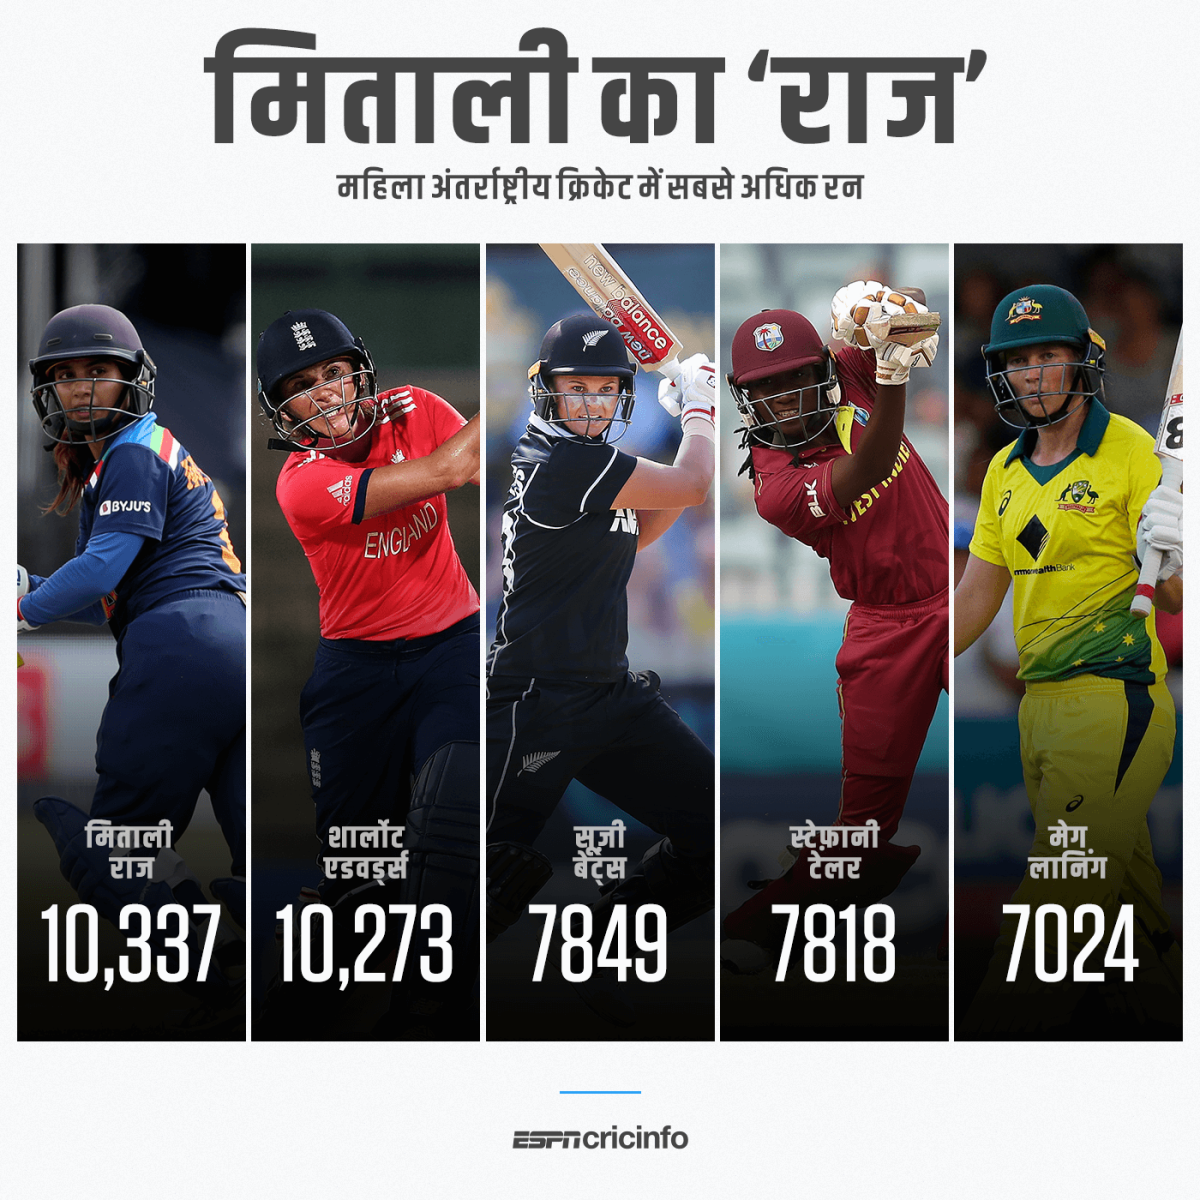 महिला क्रिकेट में सबसे अधिक रन बनाने वाली बल्लेबाज़ बनीं मिताली राज